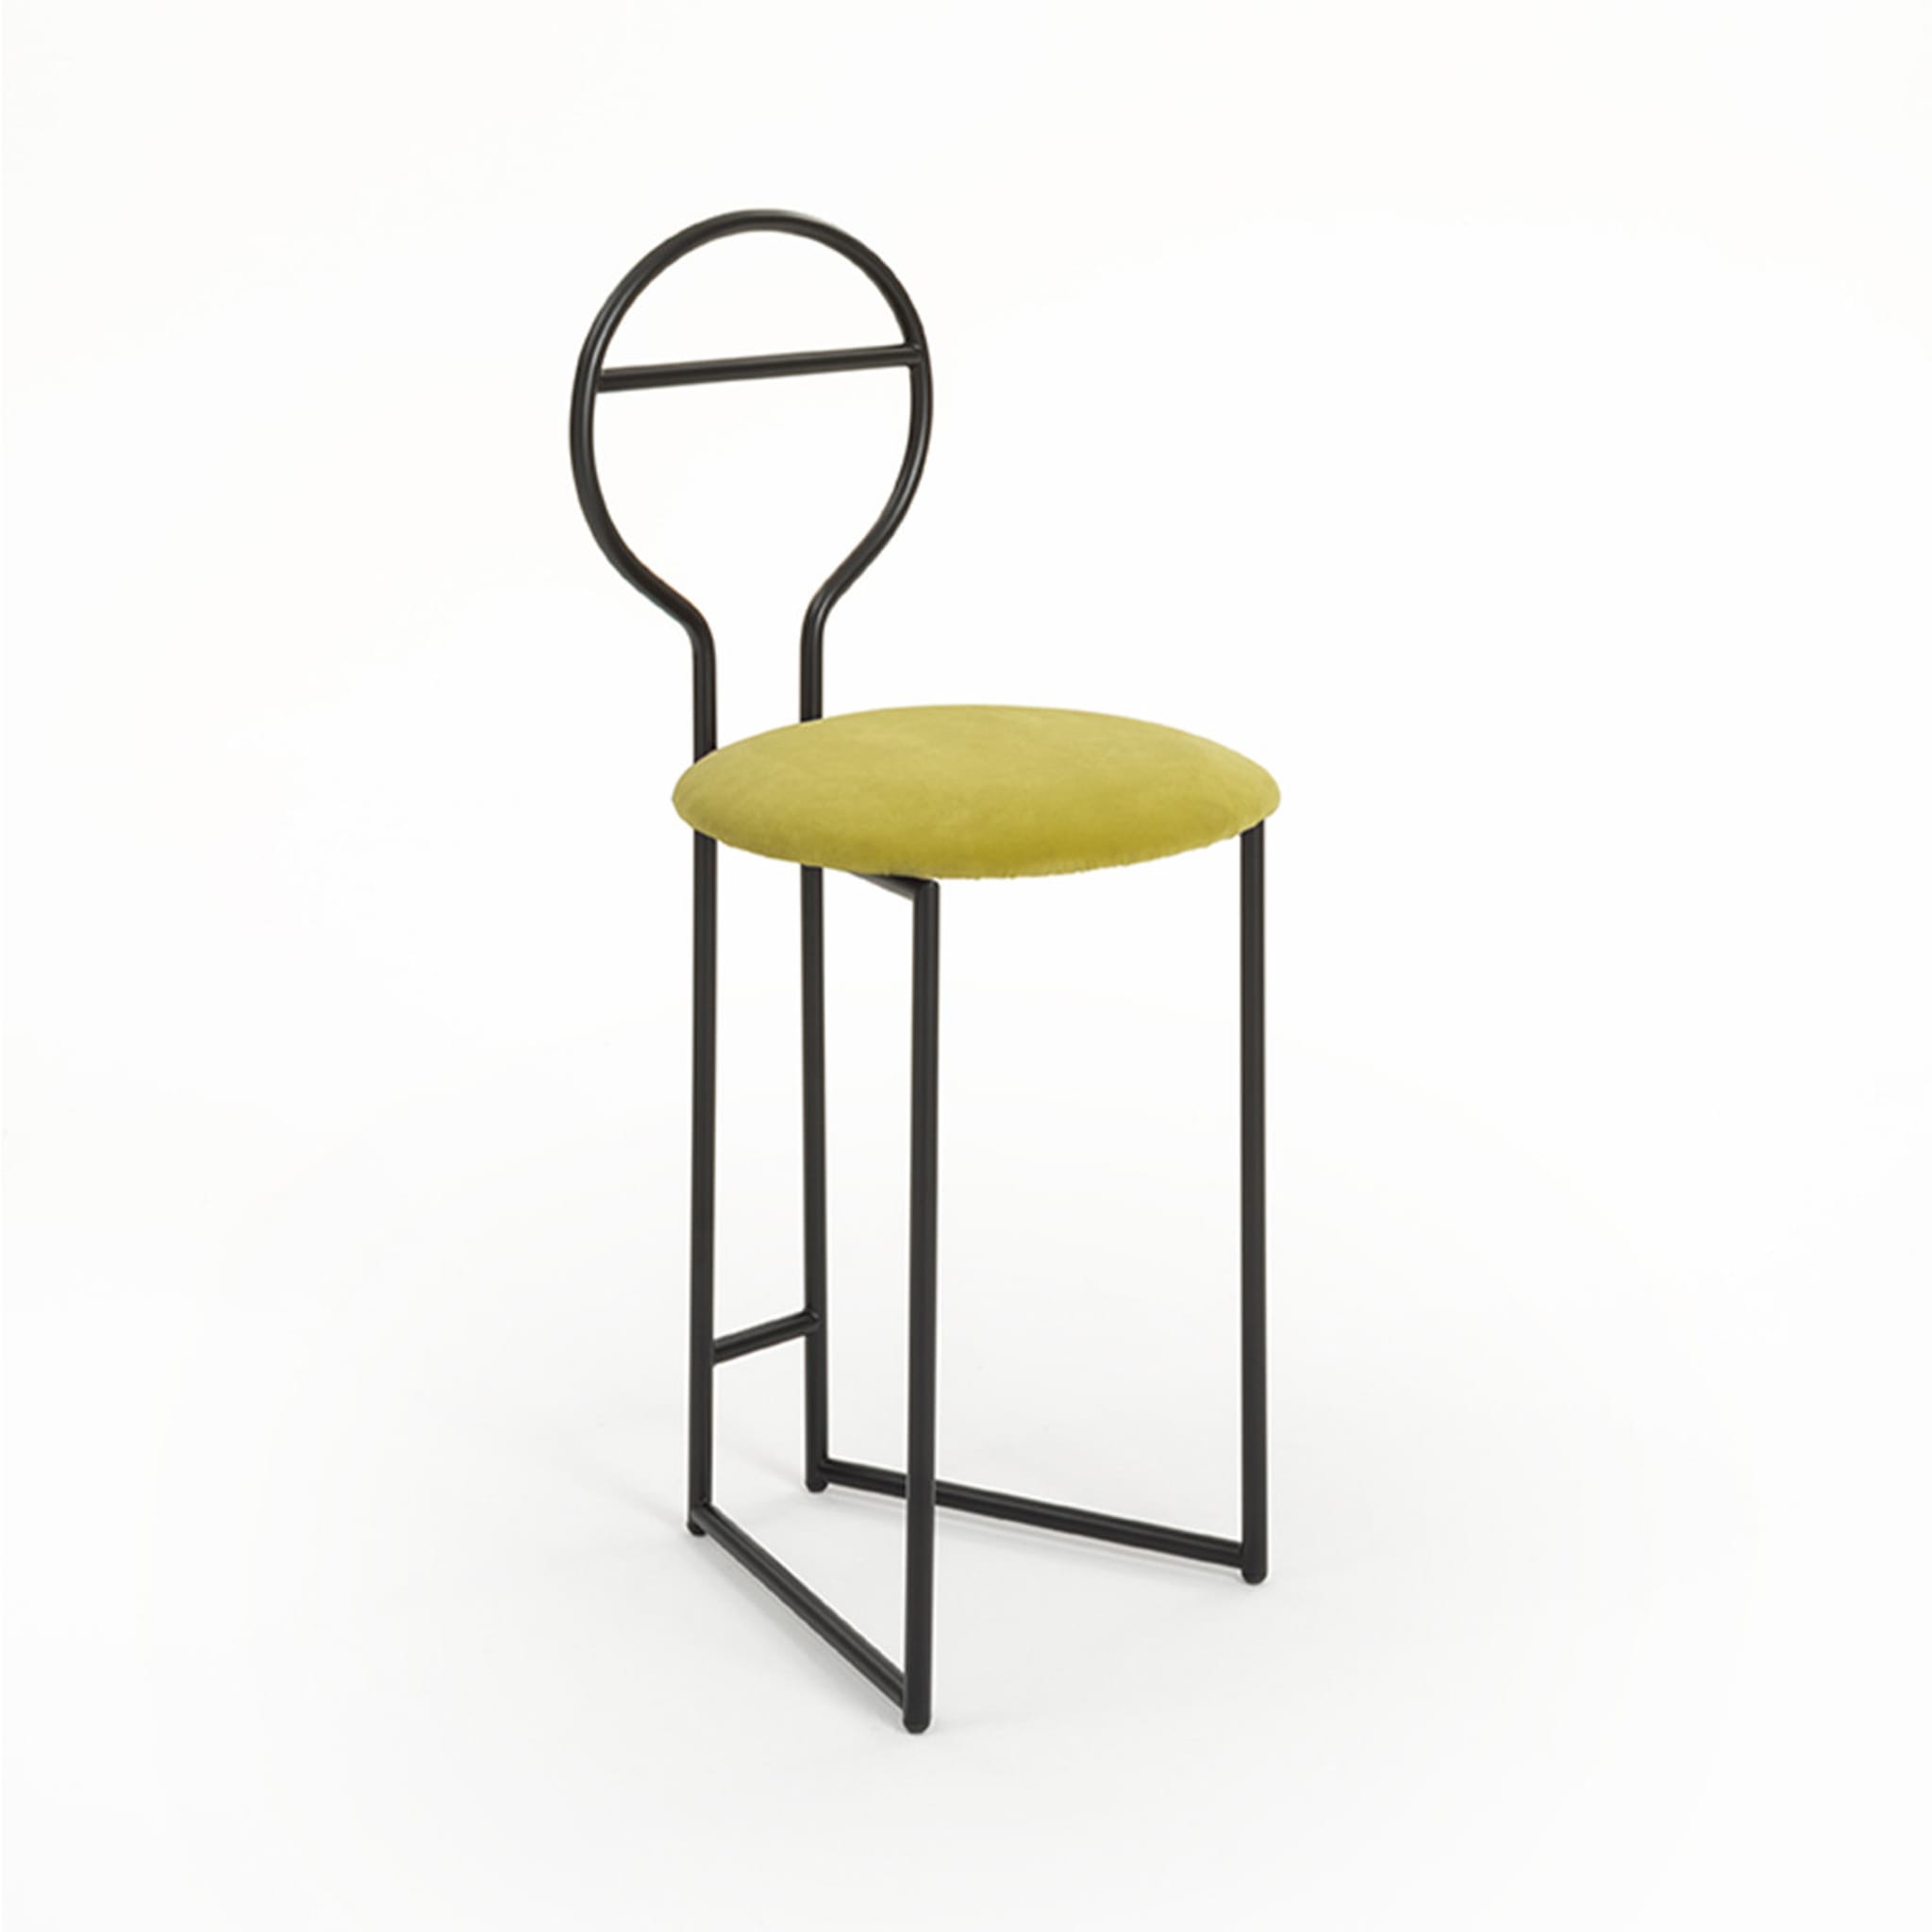 Yellow Joly Chairdrobe with Low Backrest by Lorenz + Kaz - Alternative view 1